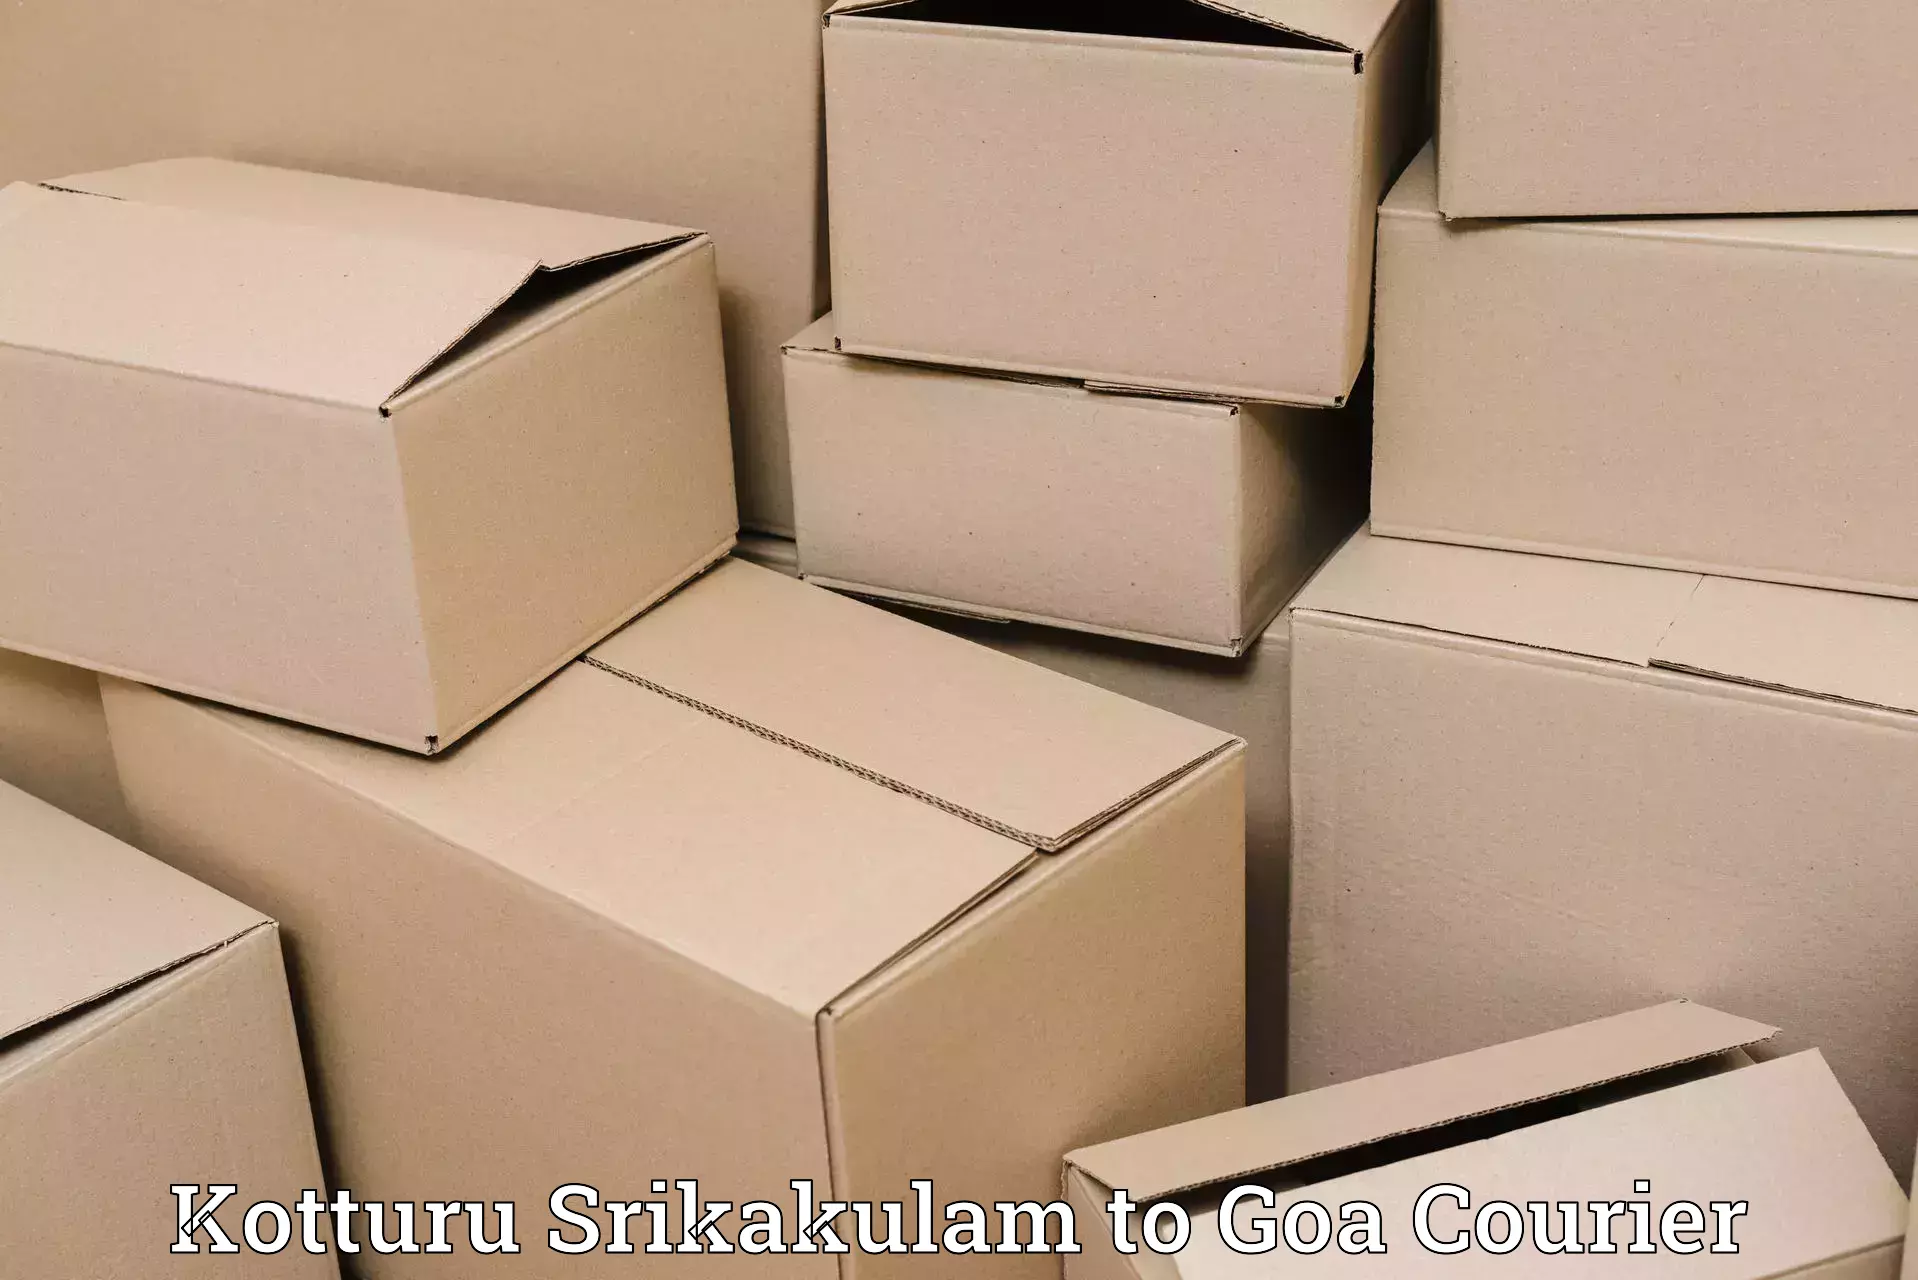 Expedited shipping methods Kotturu Srikakulam to Panaji